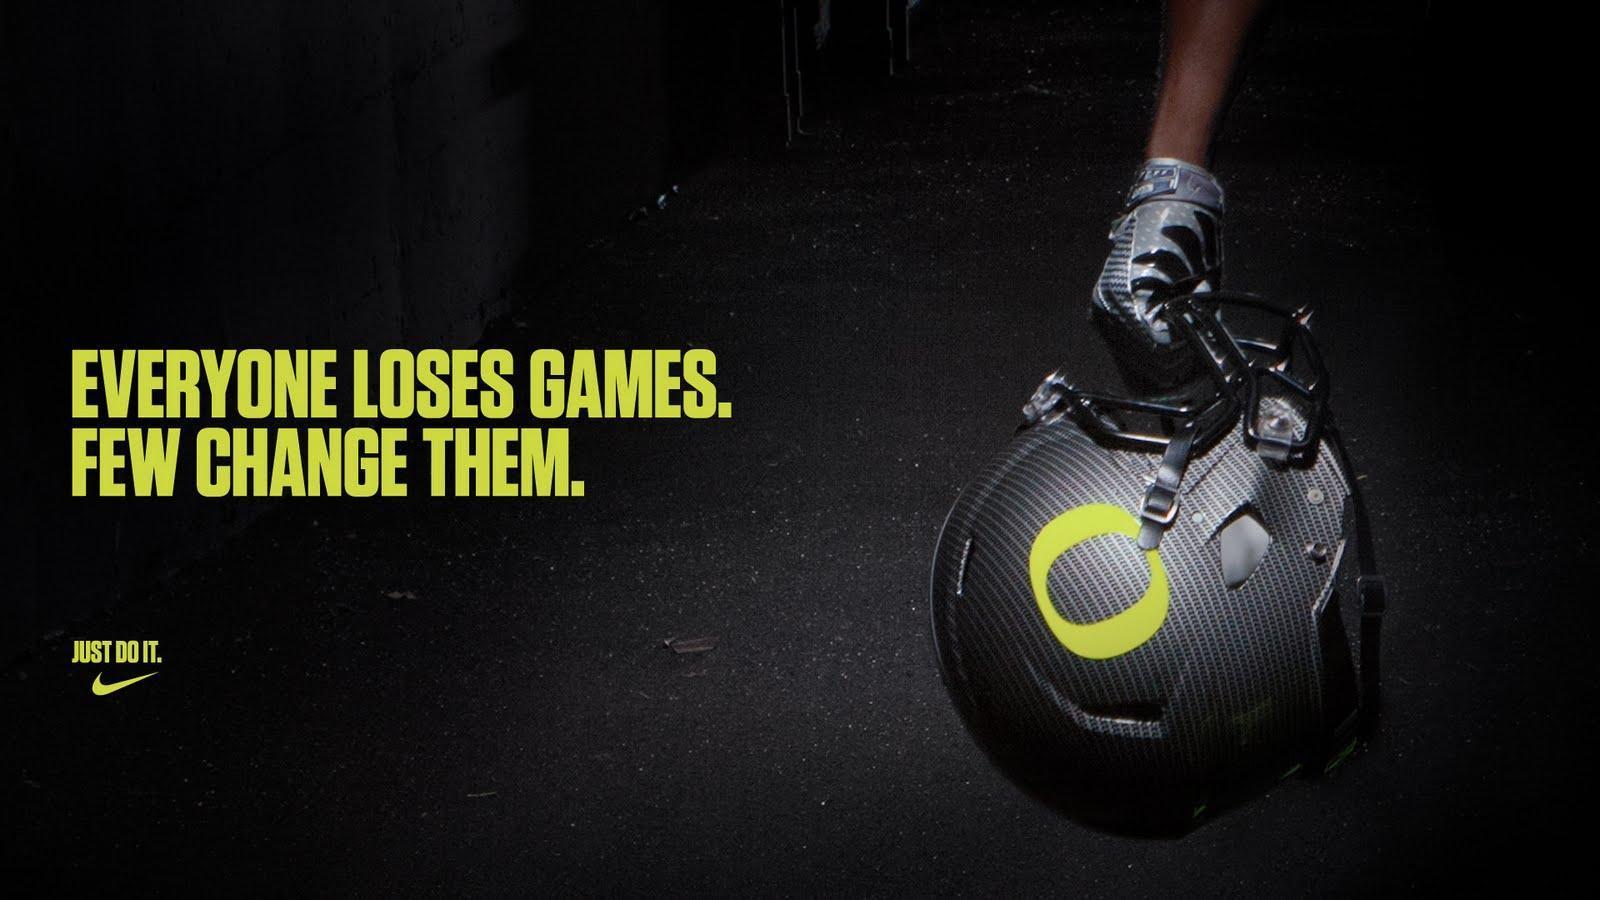 image about Nike. Nike Ad, Nike Basketball